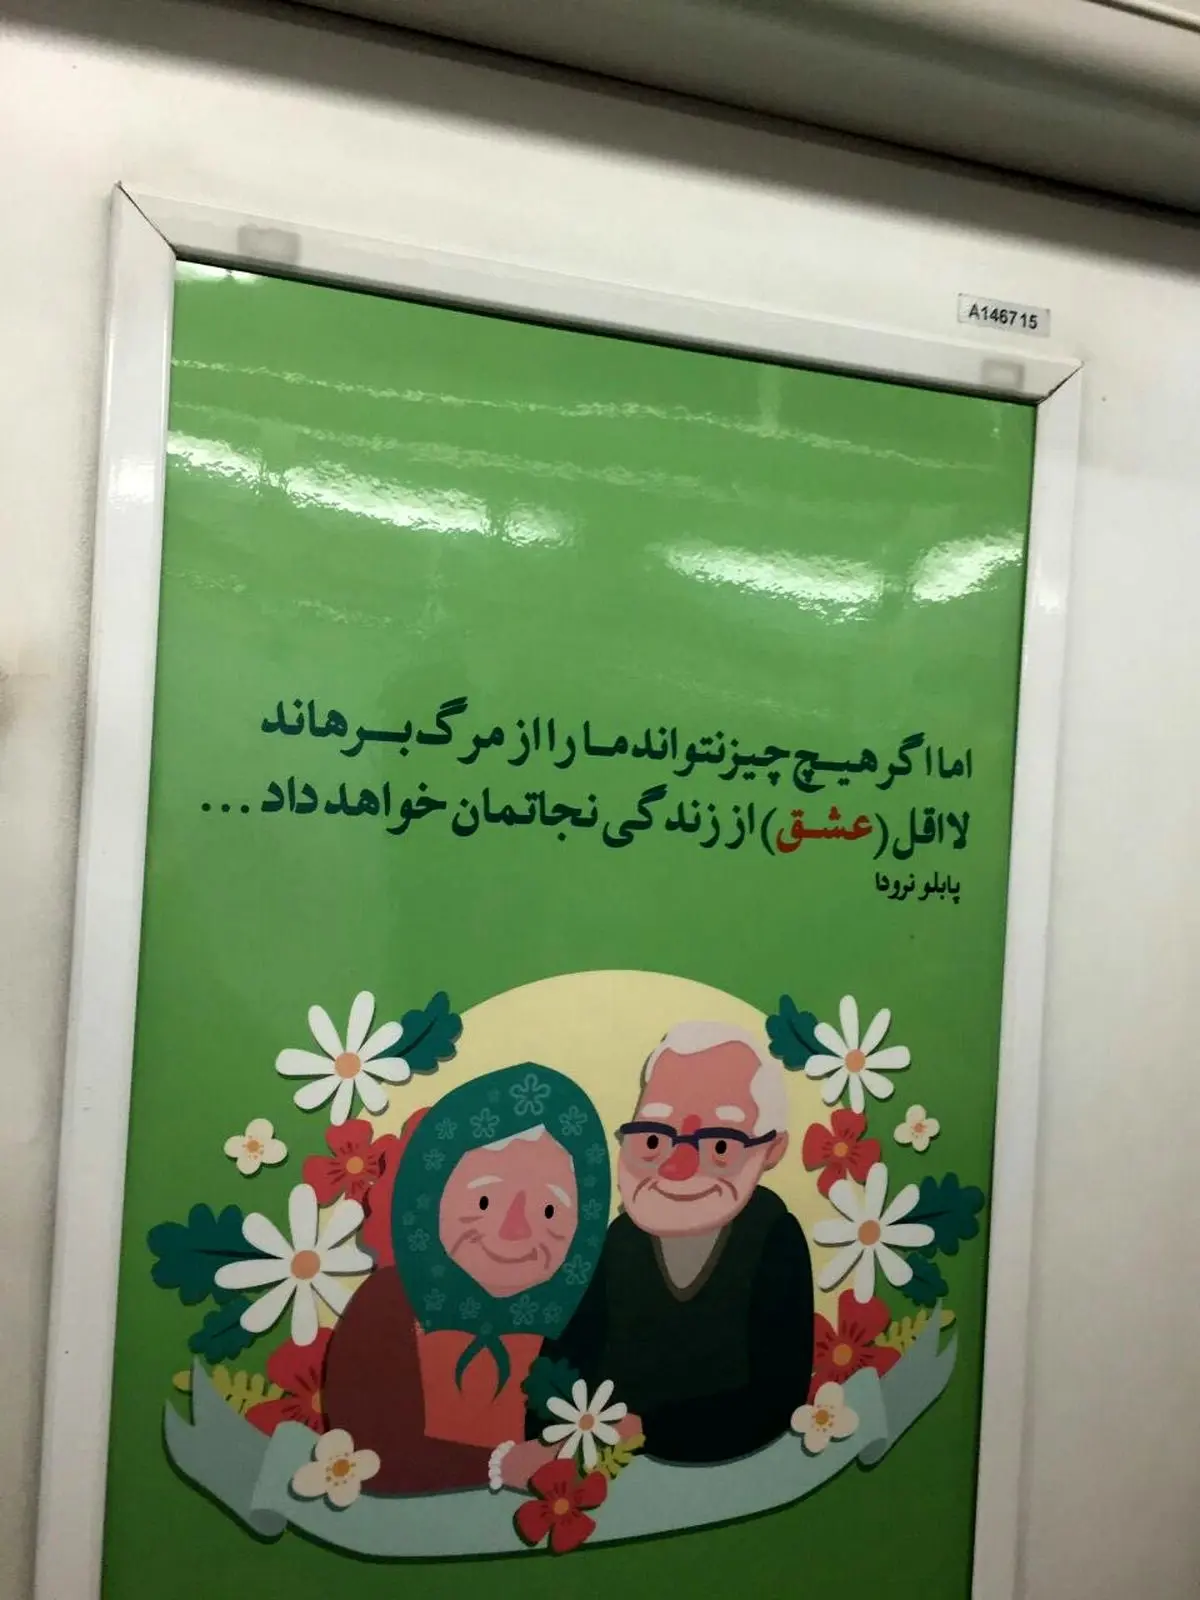 بنر جالبی که در روز ولنتاین در متروی تهران نصب شد!